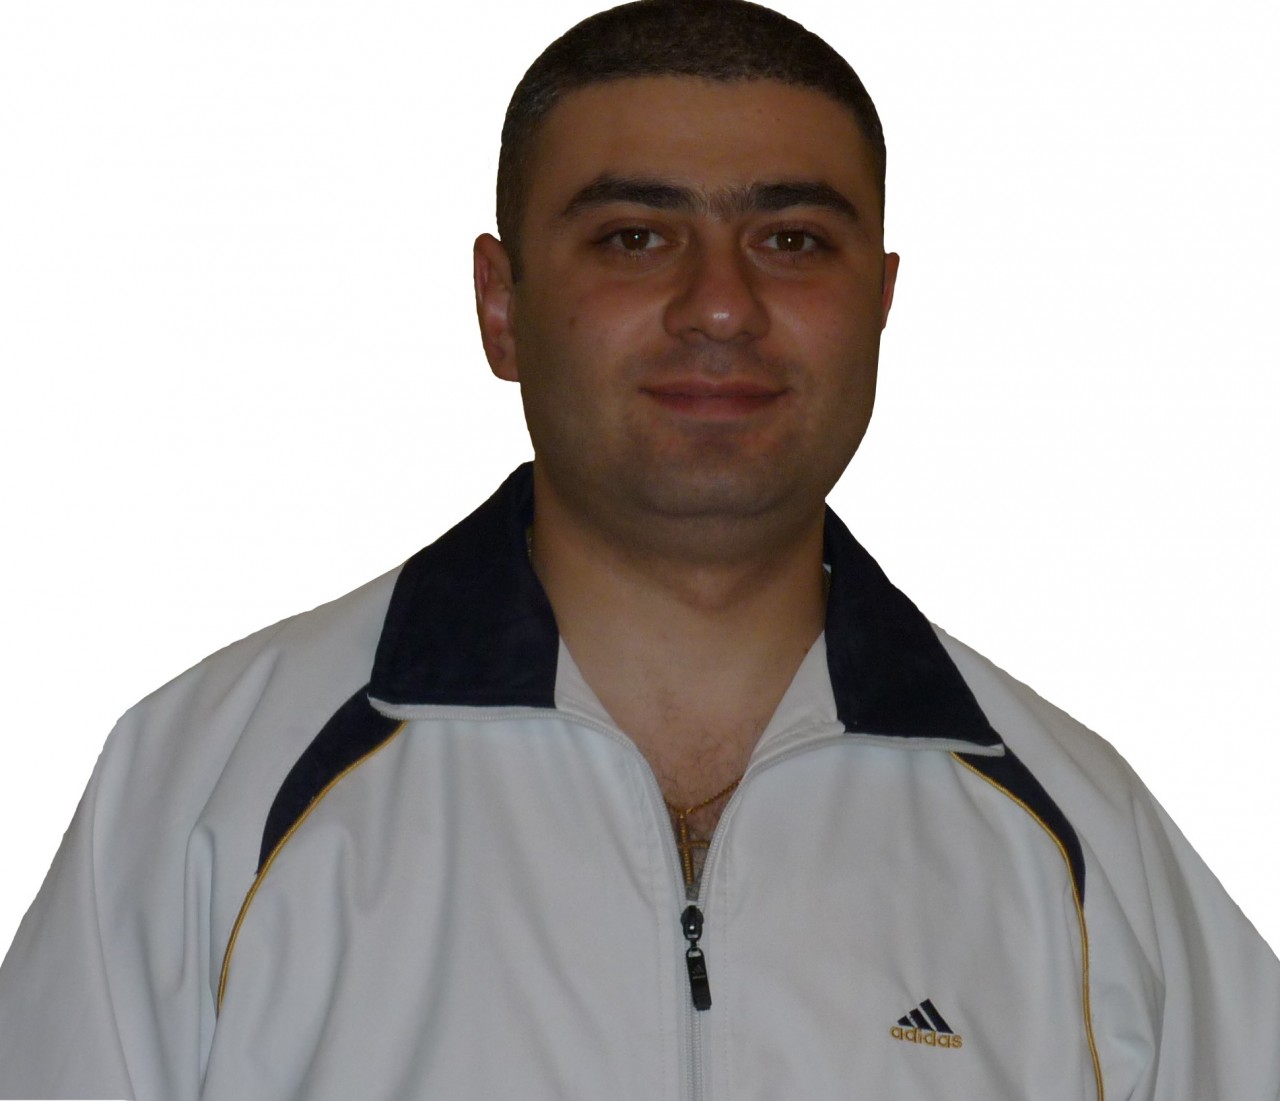 Хикар Акопович Барсегян